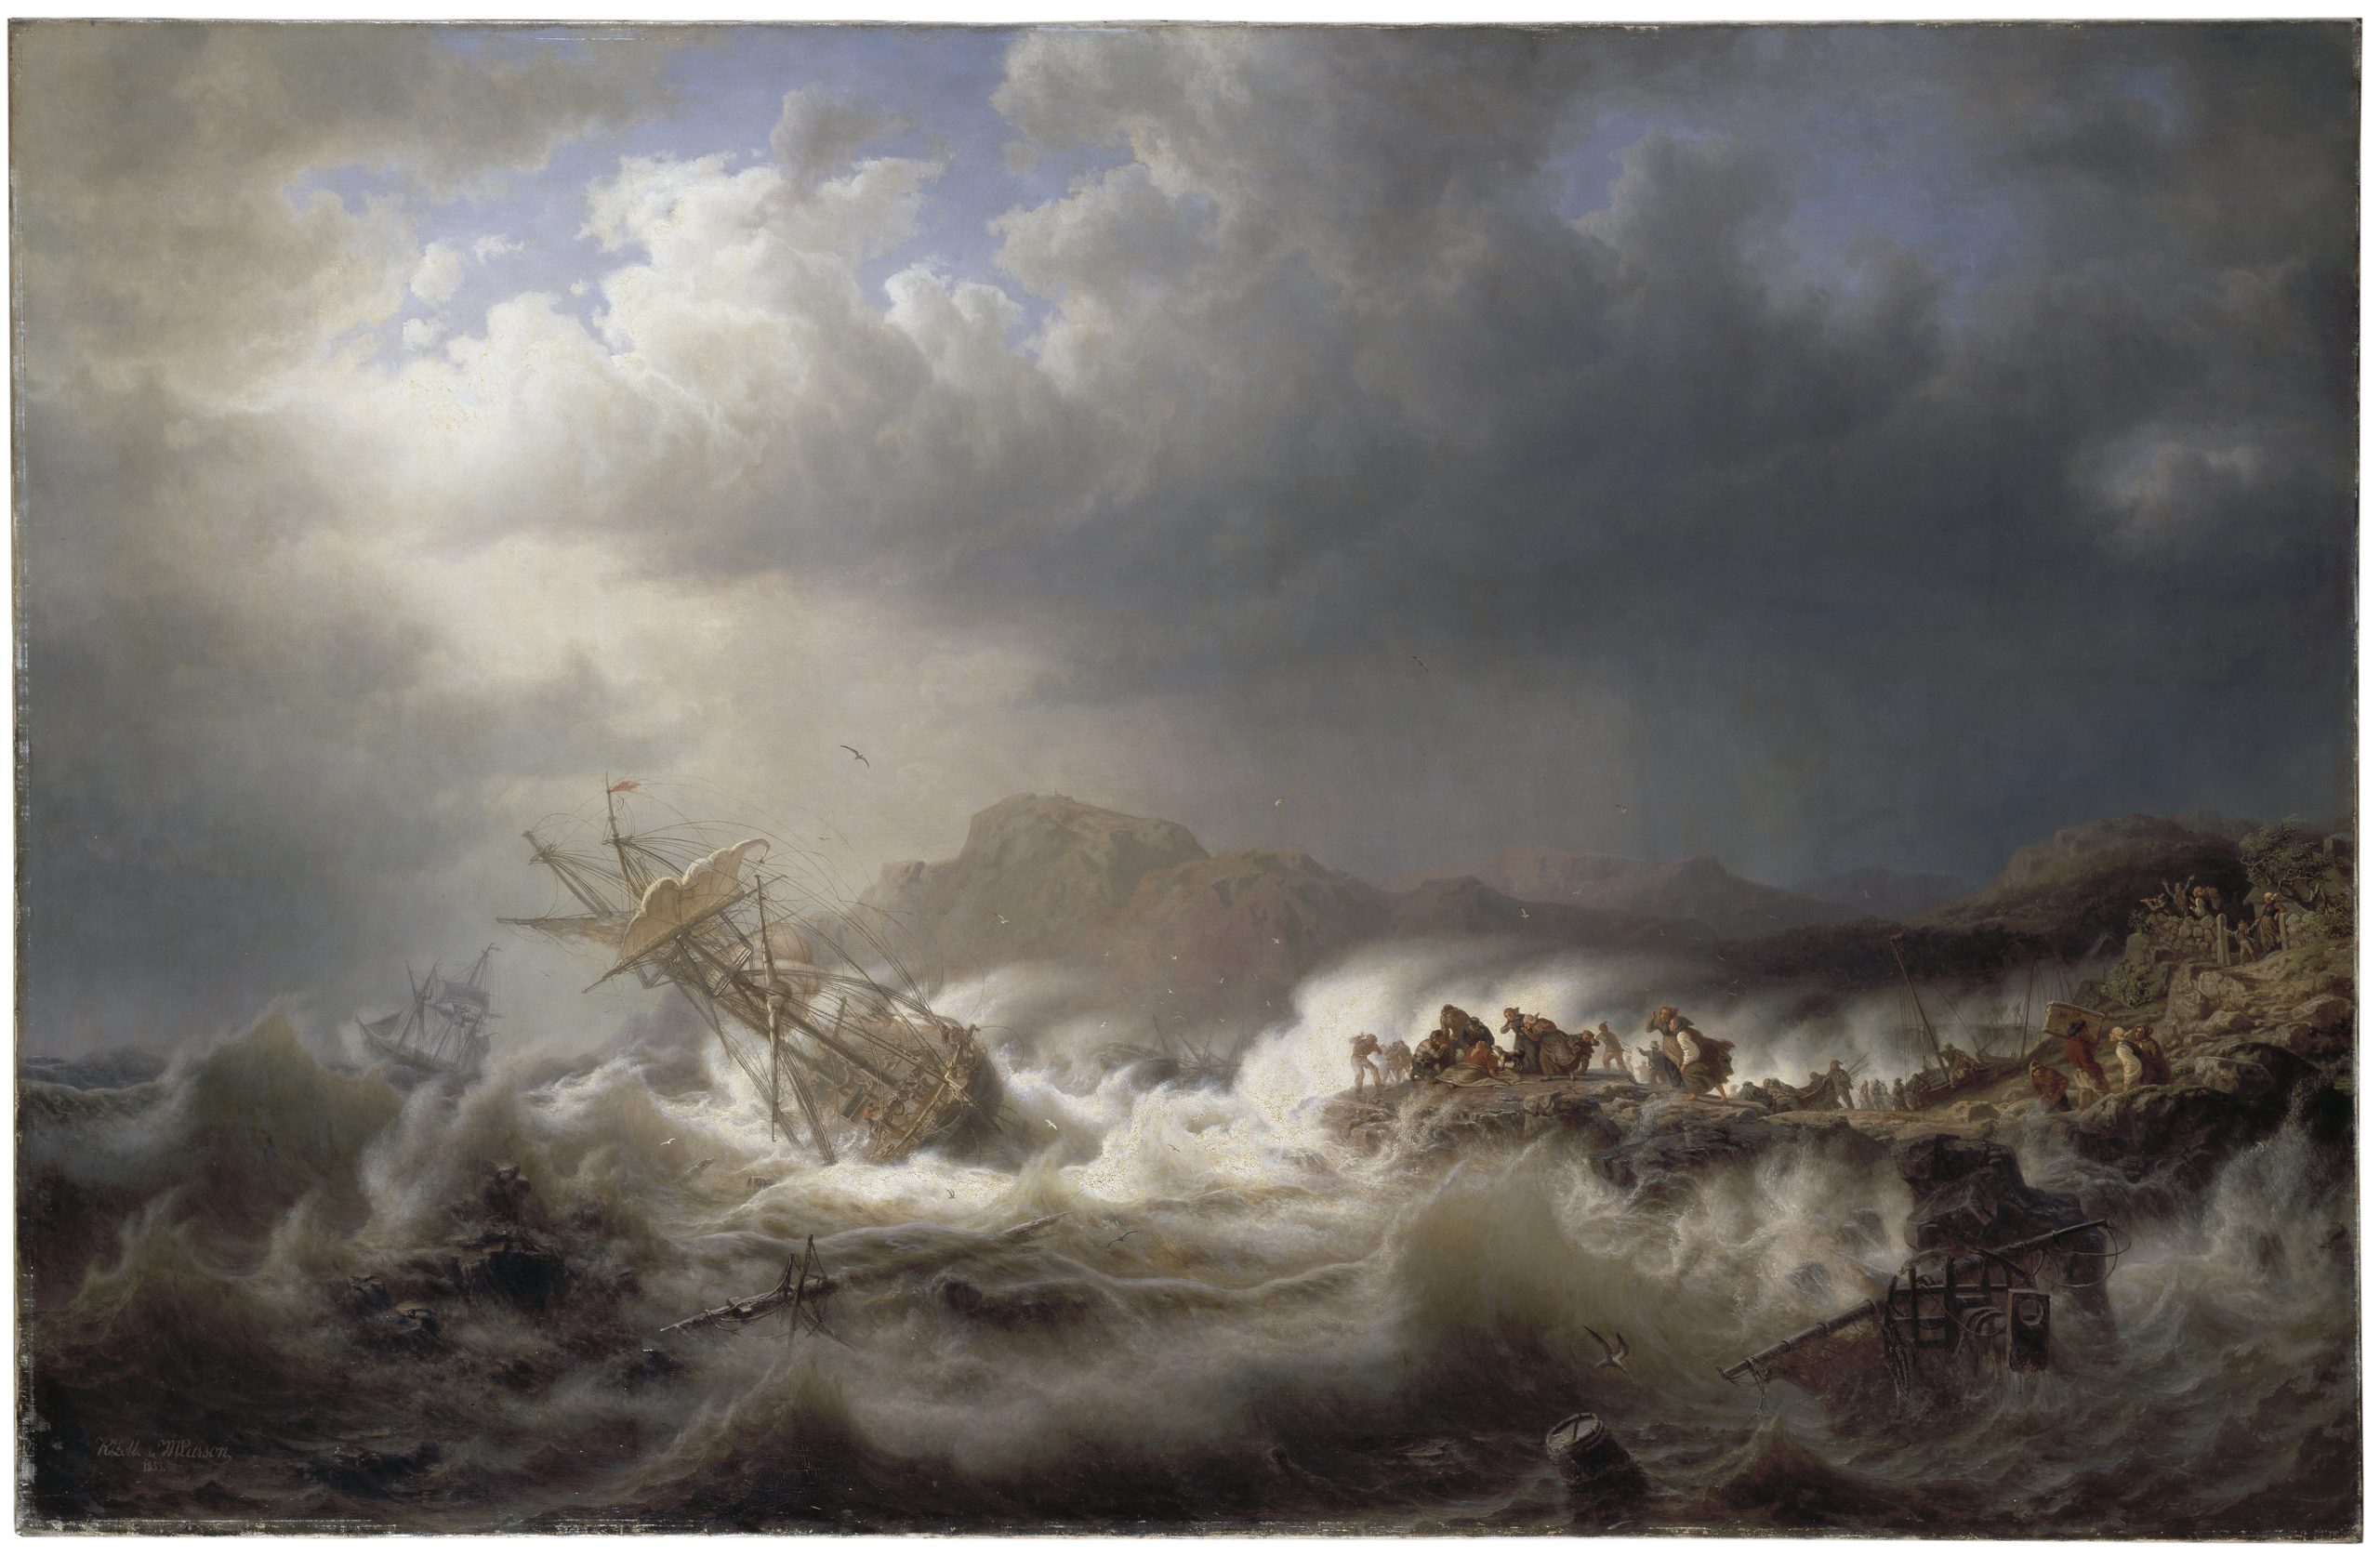 Oljemålning. Stormigt hav med ett lutande skepp. På en klippa intill finns människor som just räddat de skeppsbrutna,